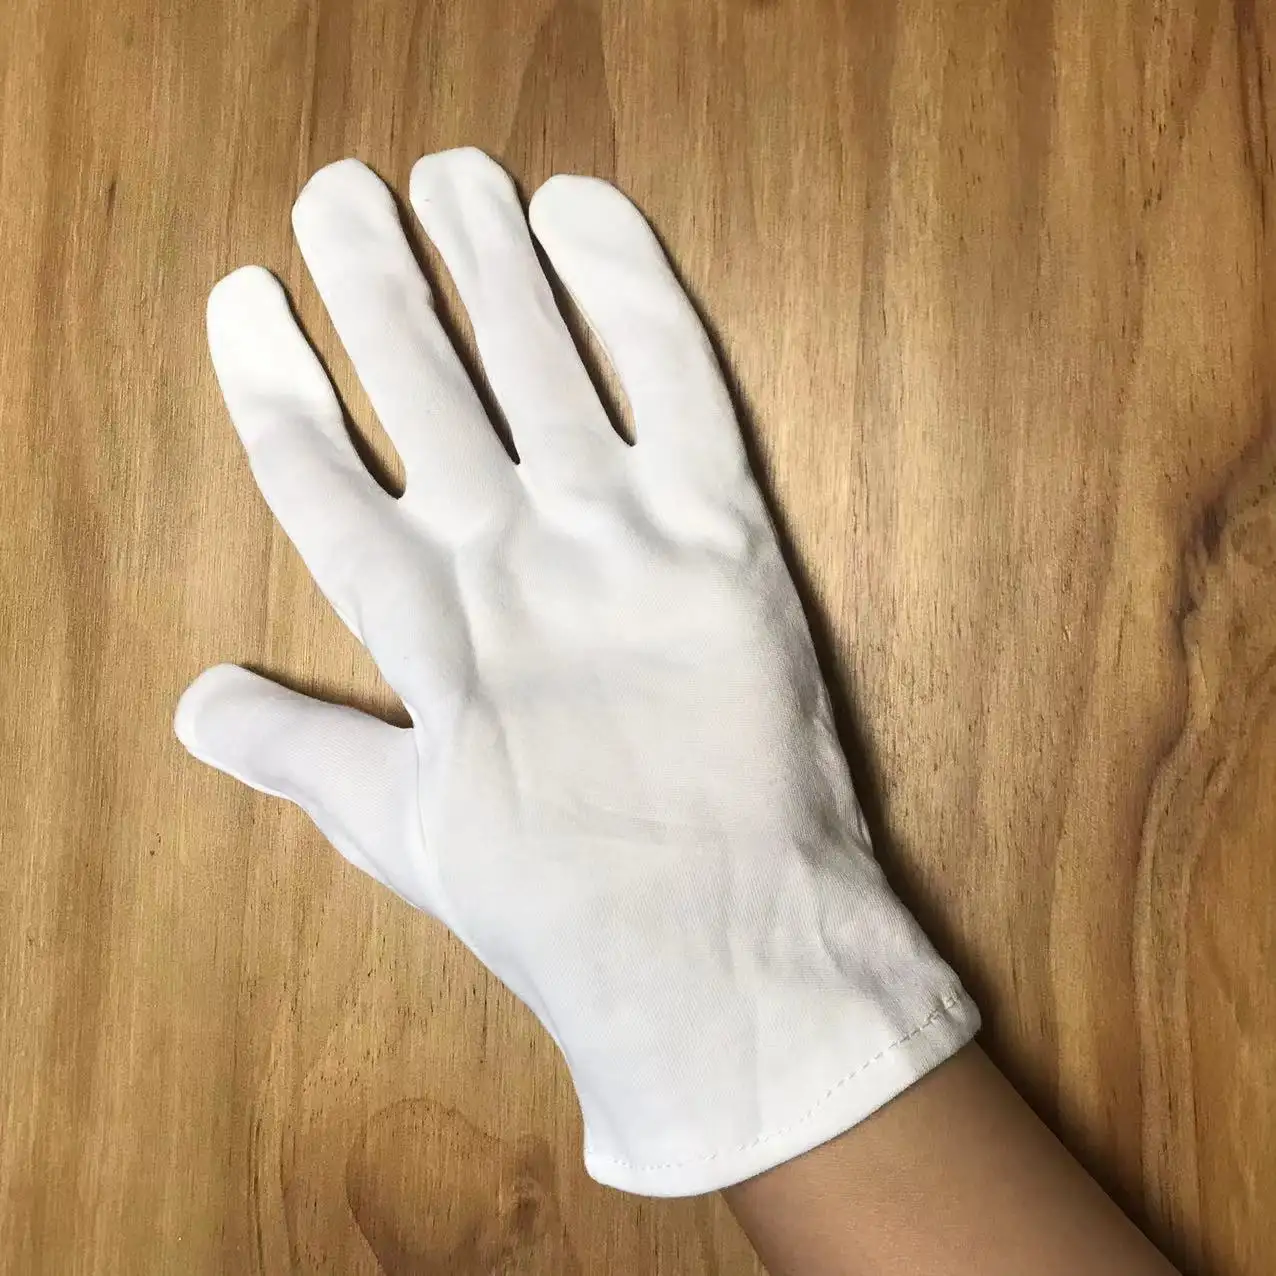 Venta al por mayor de algodón blanco de la mano orgánica eczema guantes para niños guantes blancos de algodón guantes de marcha